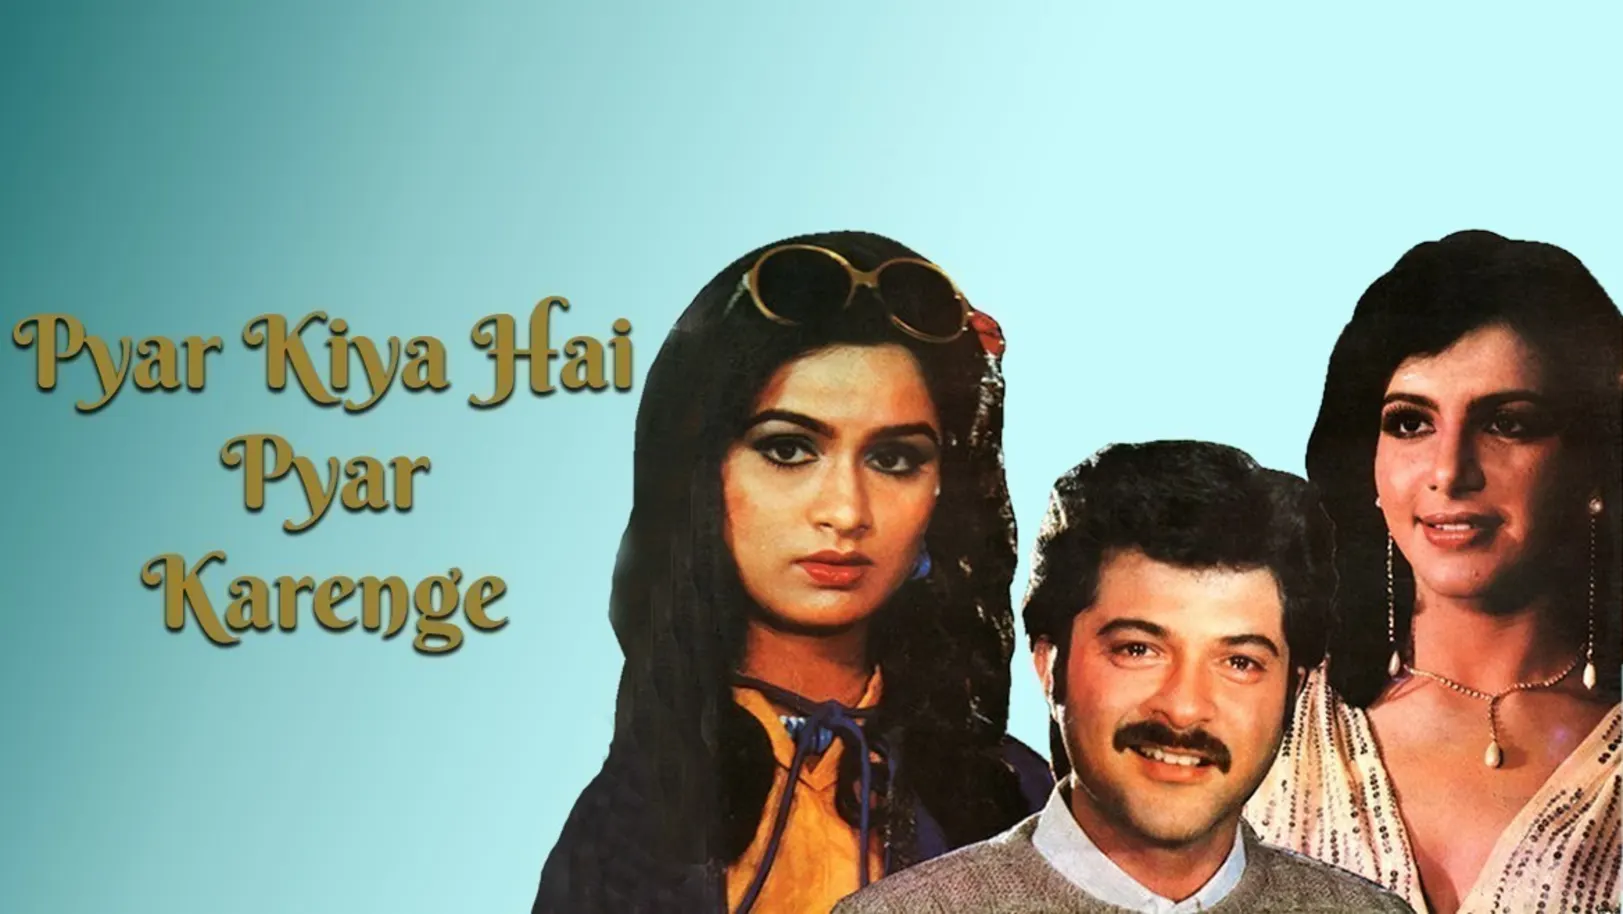 Pyar Kiya Hai Pyar Karenge Movie